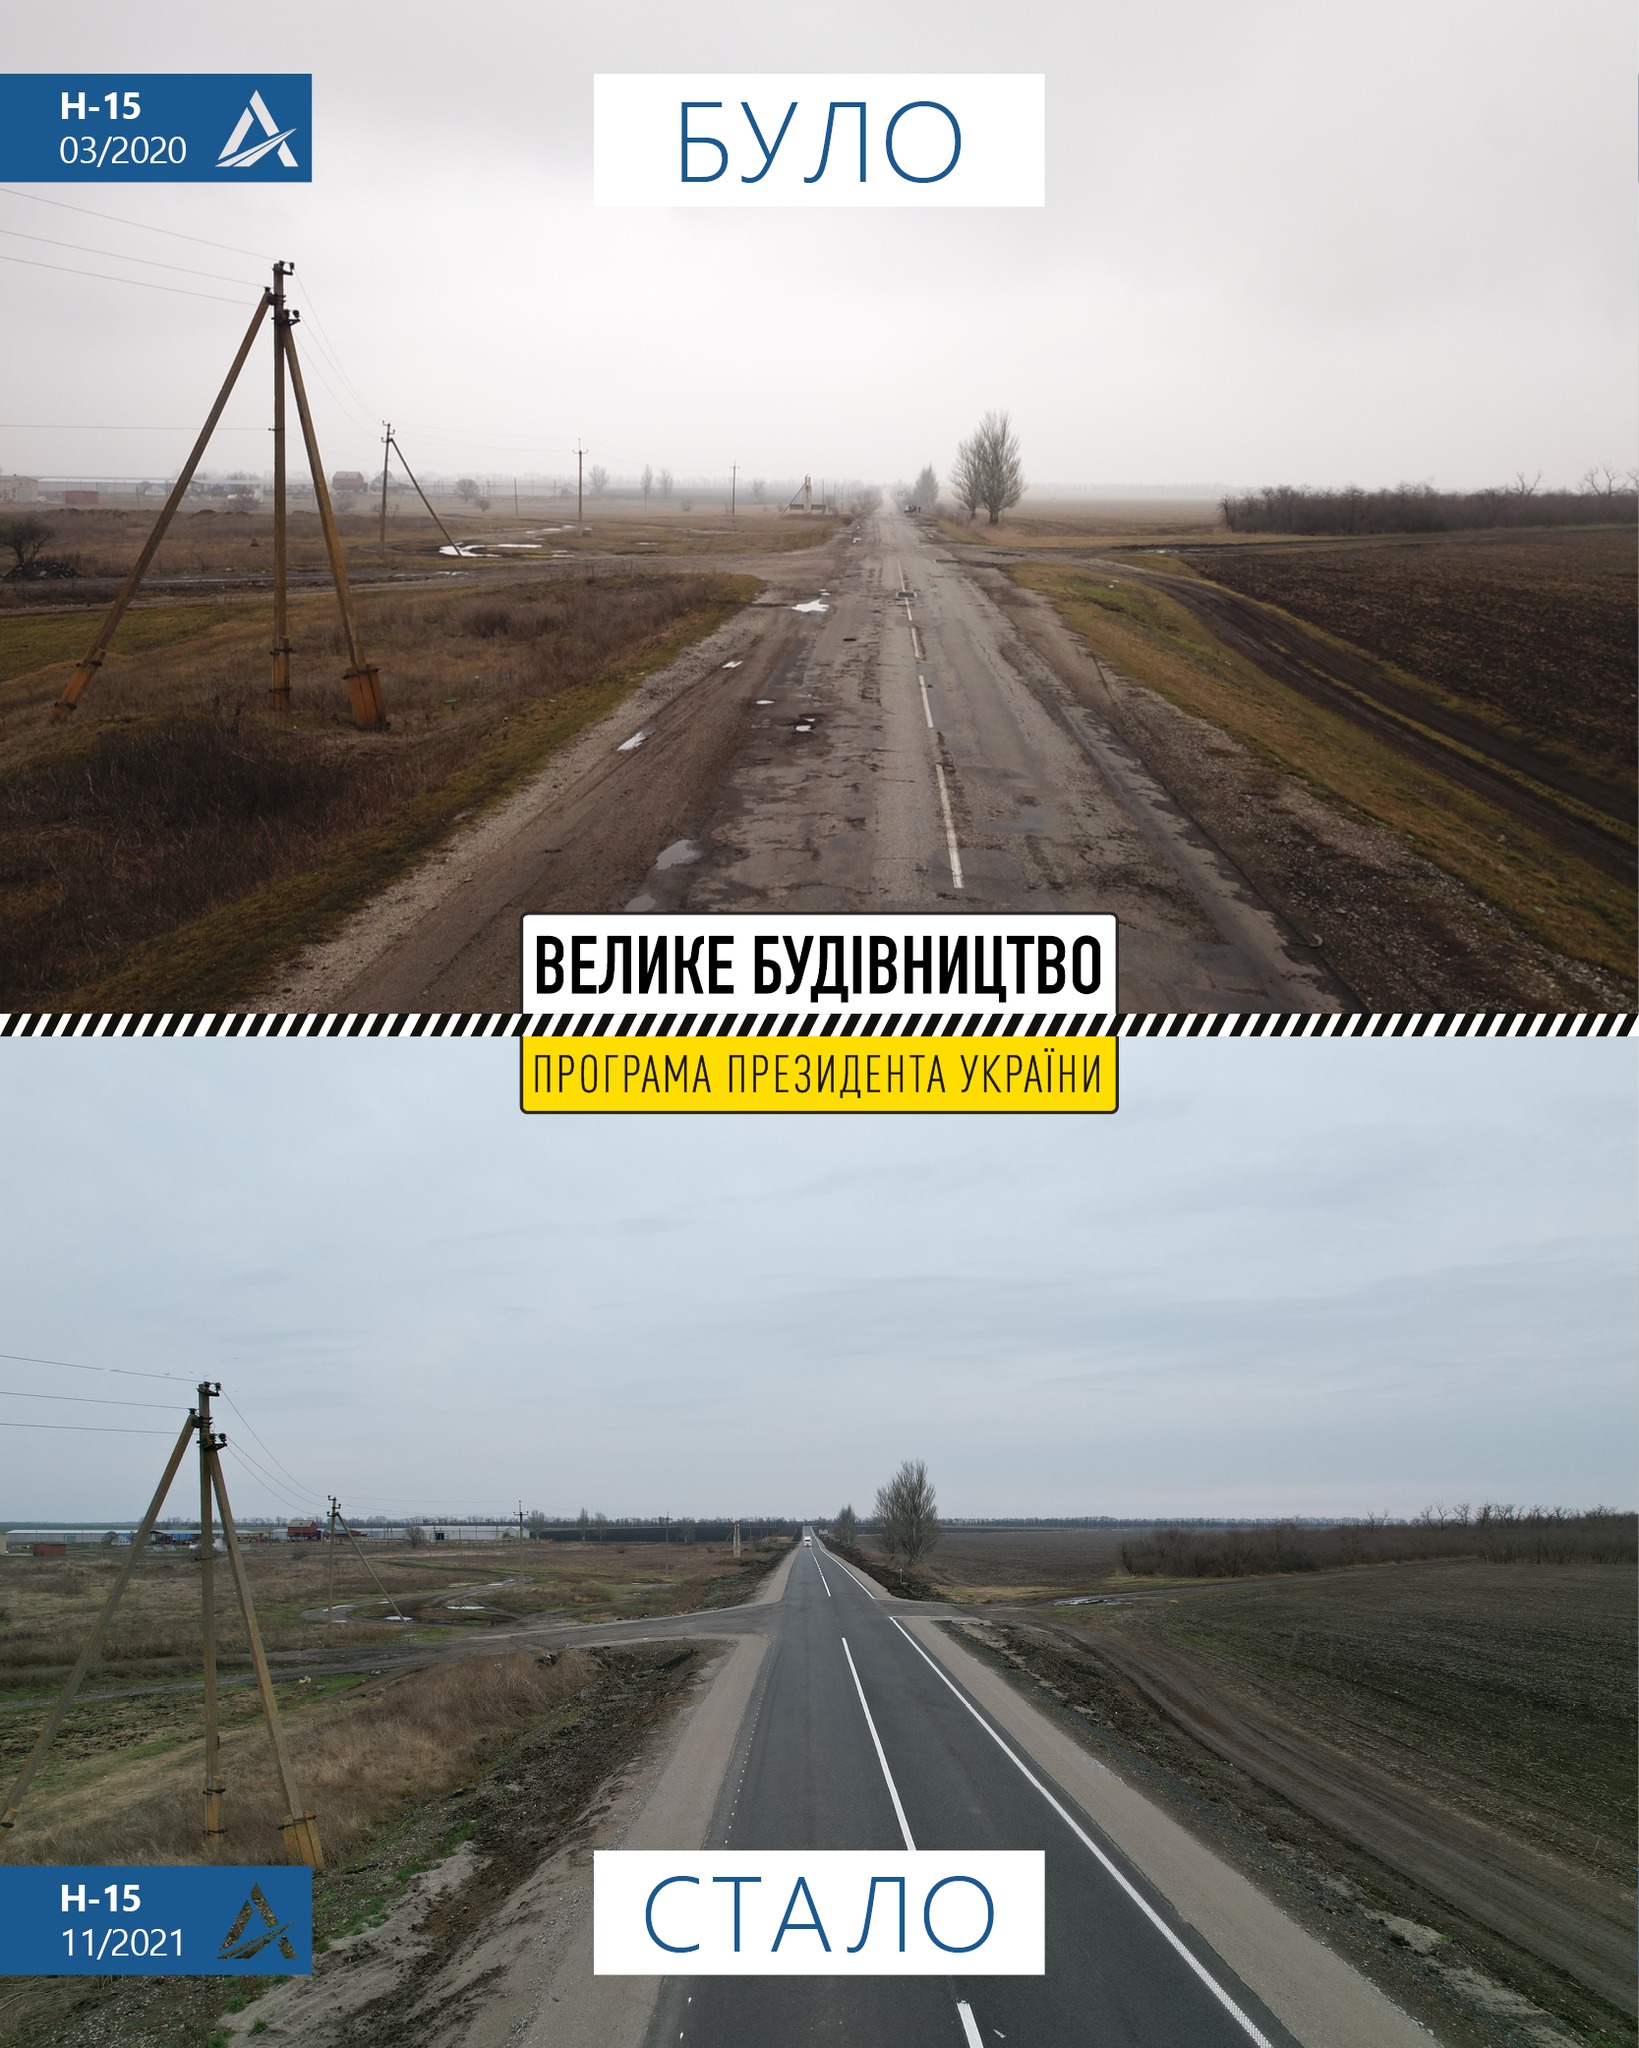 Ремонт трассы Запорожье-Донецк - что сделано (фото)